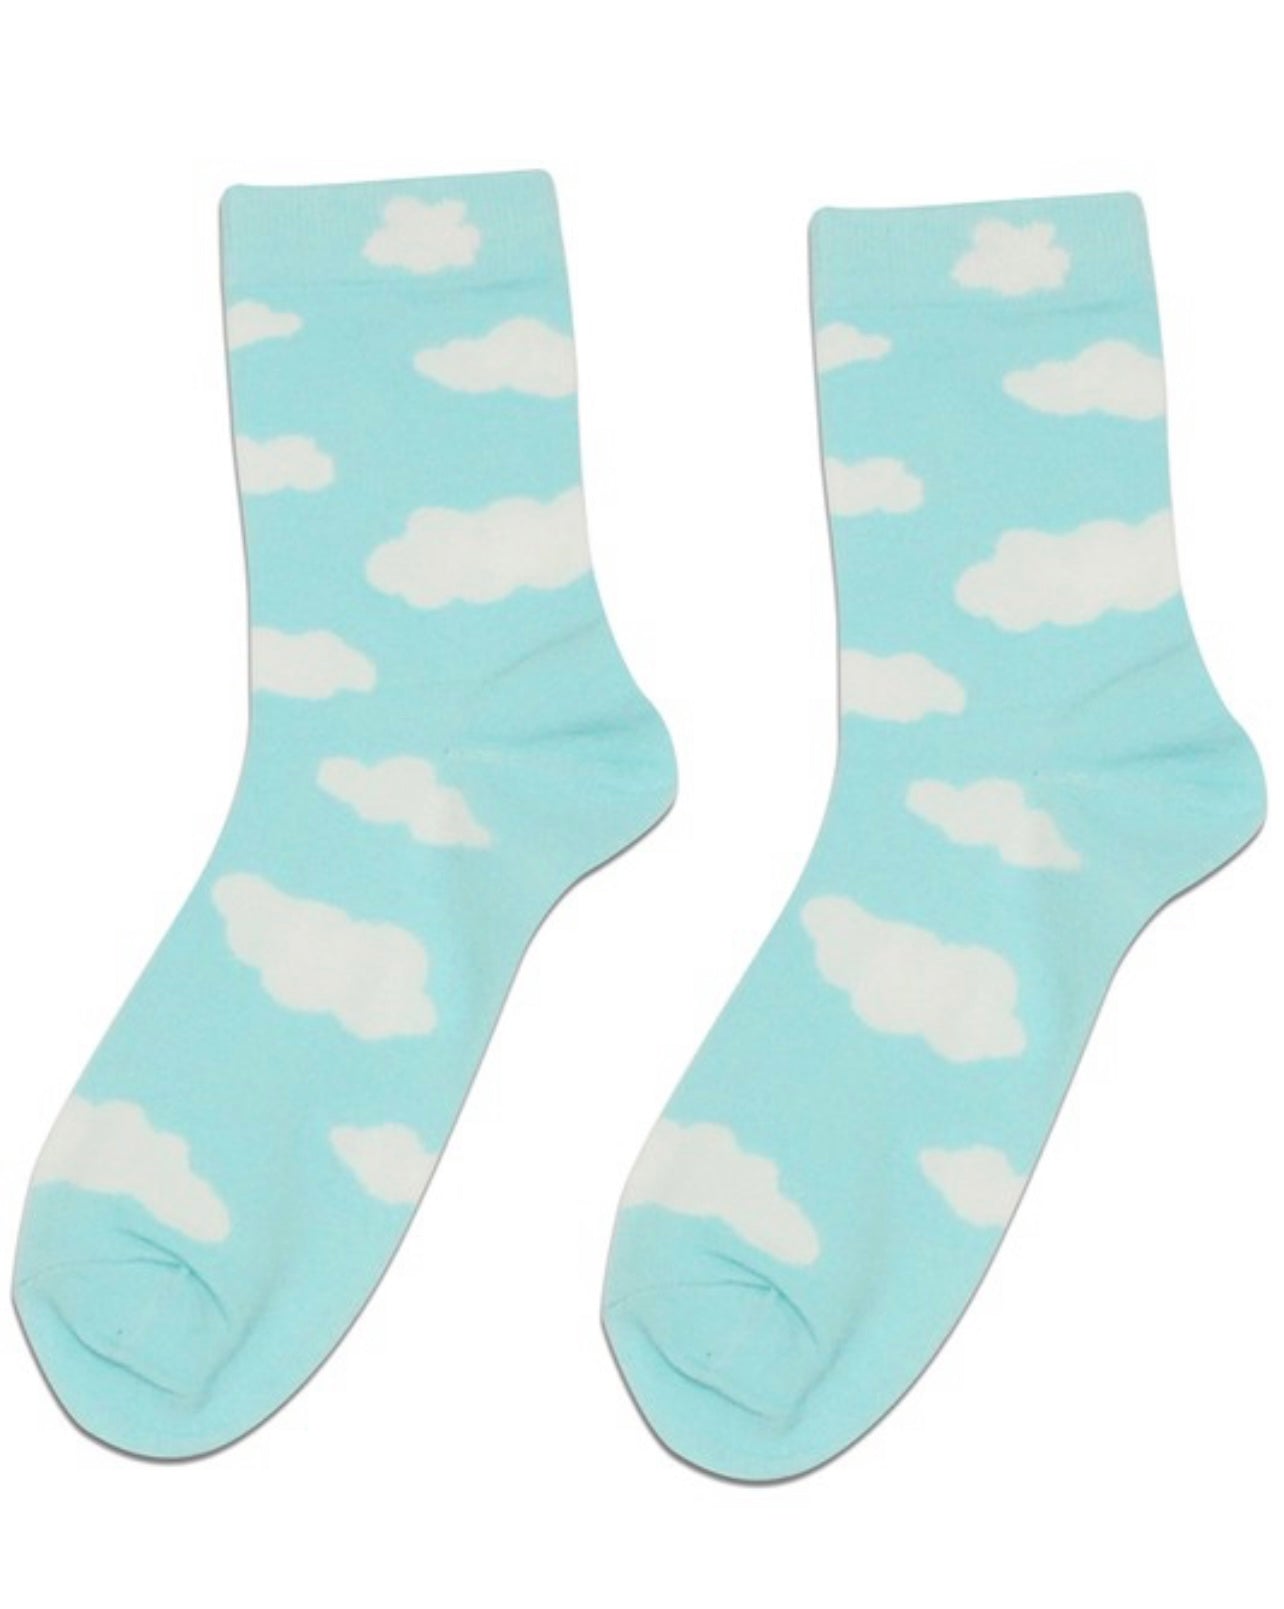 blue socks , cloud socks . cloud , walking on a cloud ,